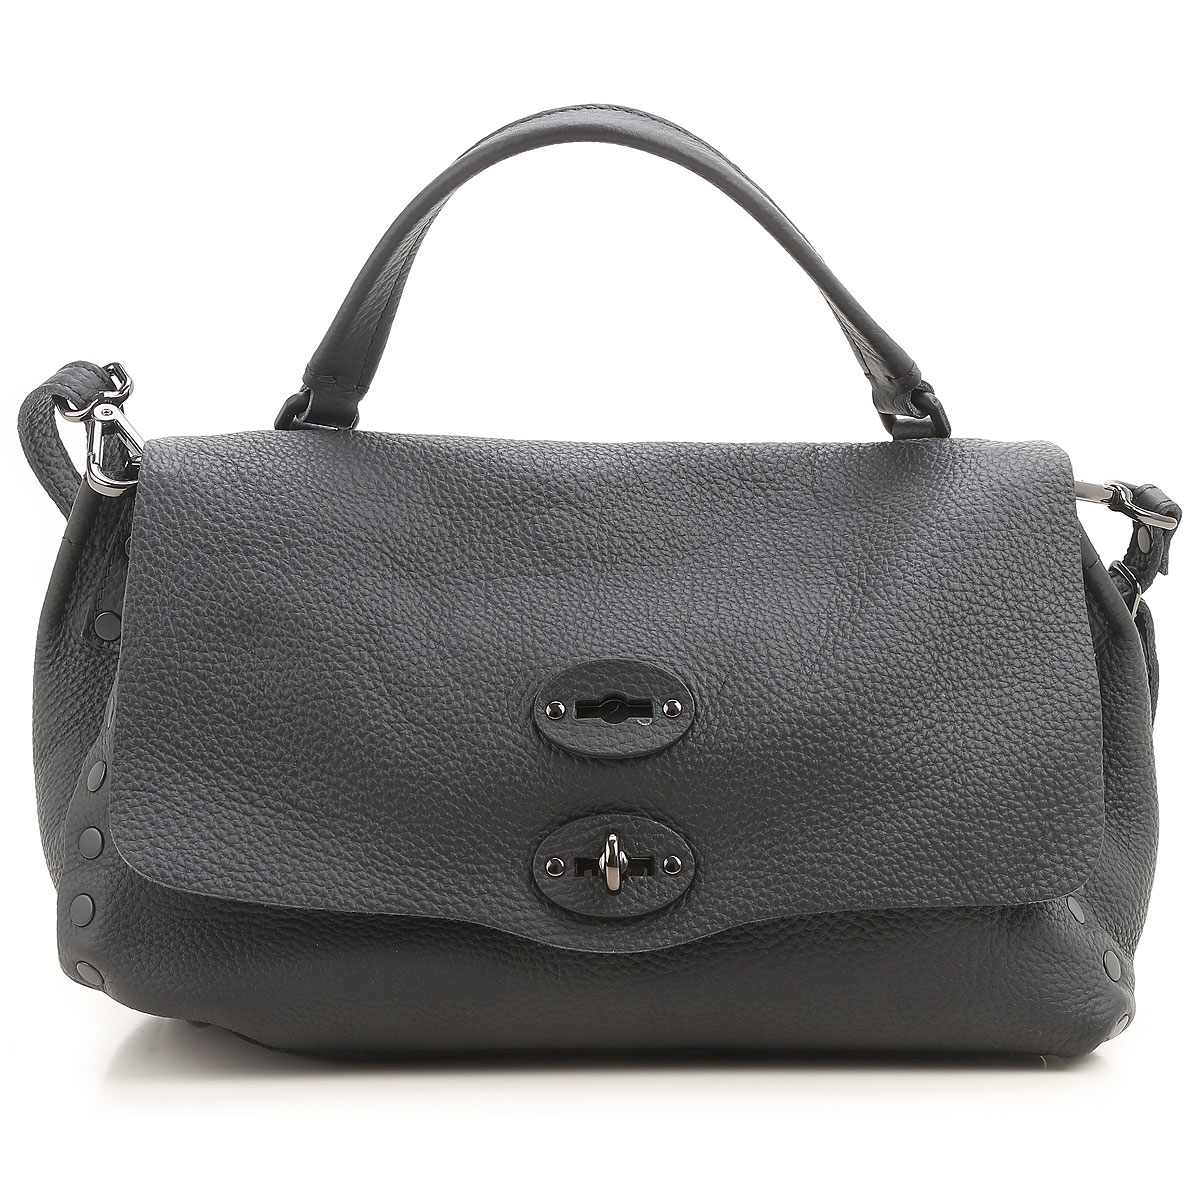 Handbags Zanellato, Style code: 6138-p6-02